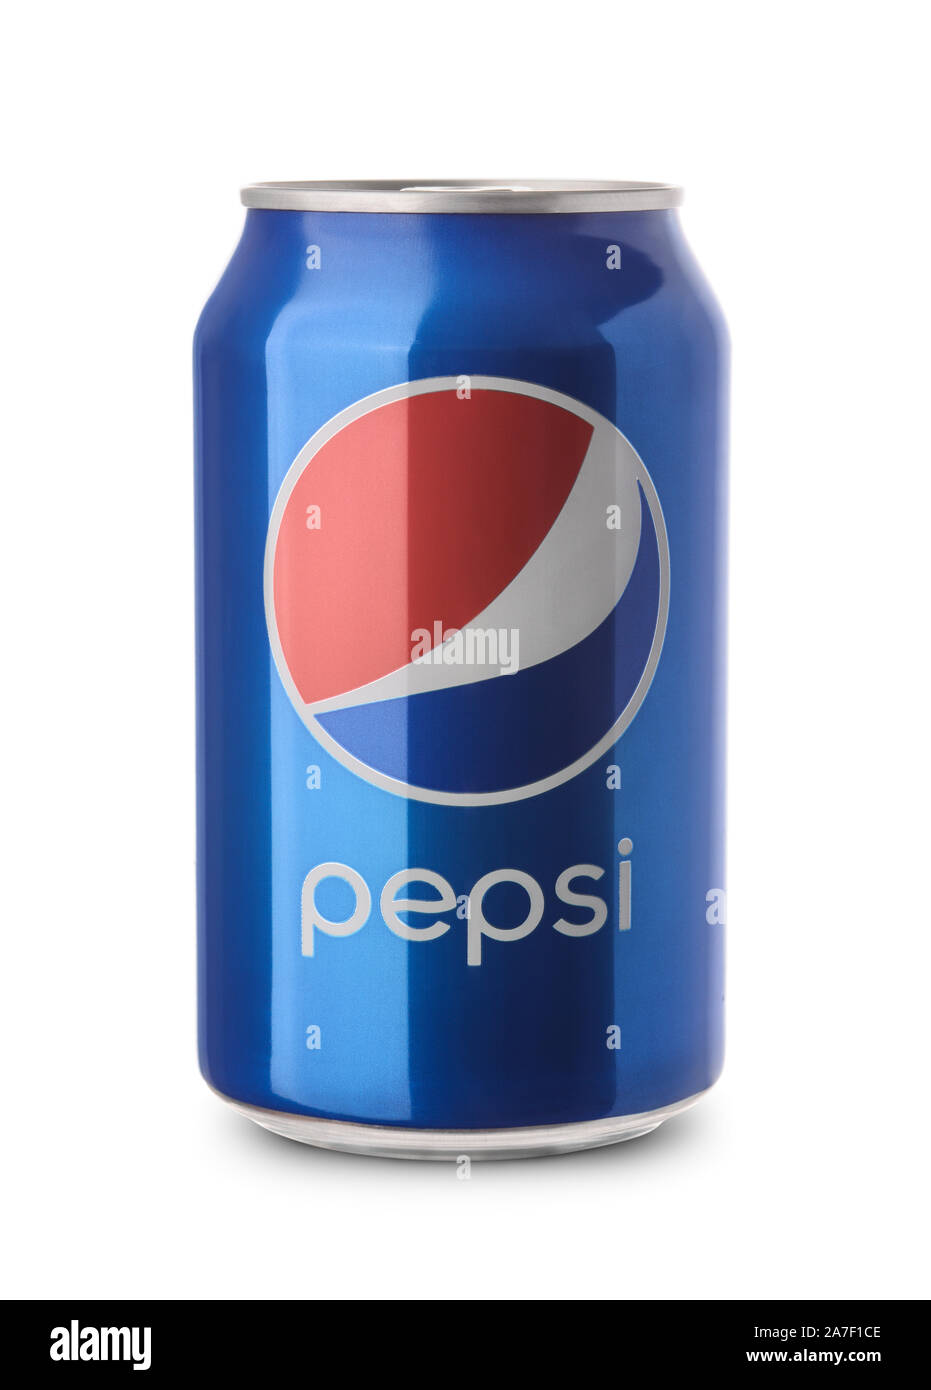 Samara, Russia - 26 Febbraio 2016: un prodotto colpo di un non aperto di Pepsi isolati su sfondo bianco. Pepsi è fabbricato da Pepsico Inc. Foto Stock